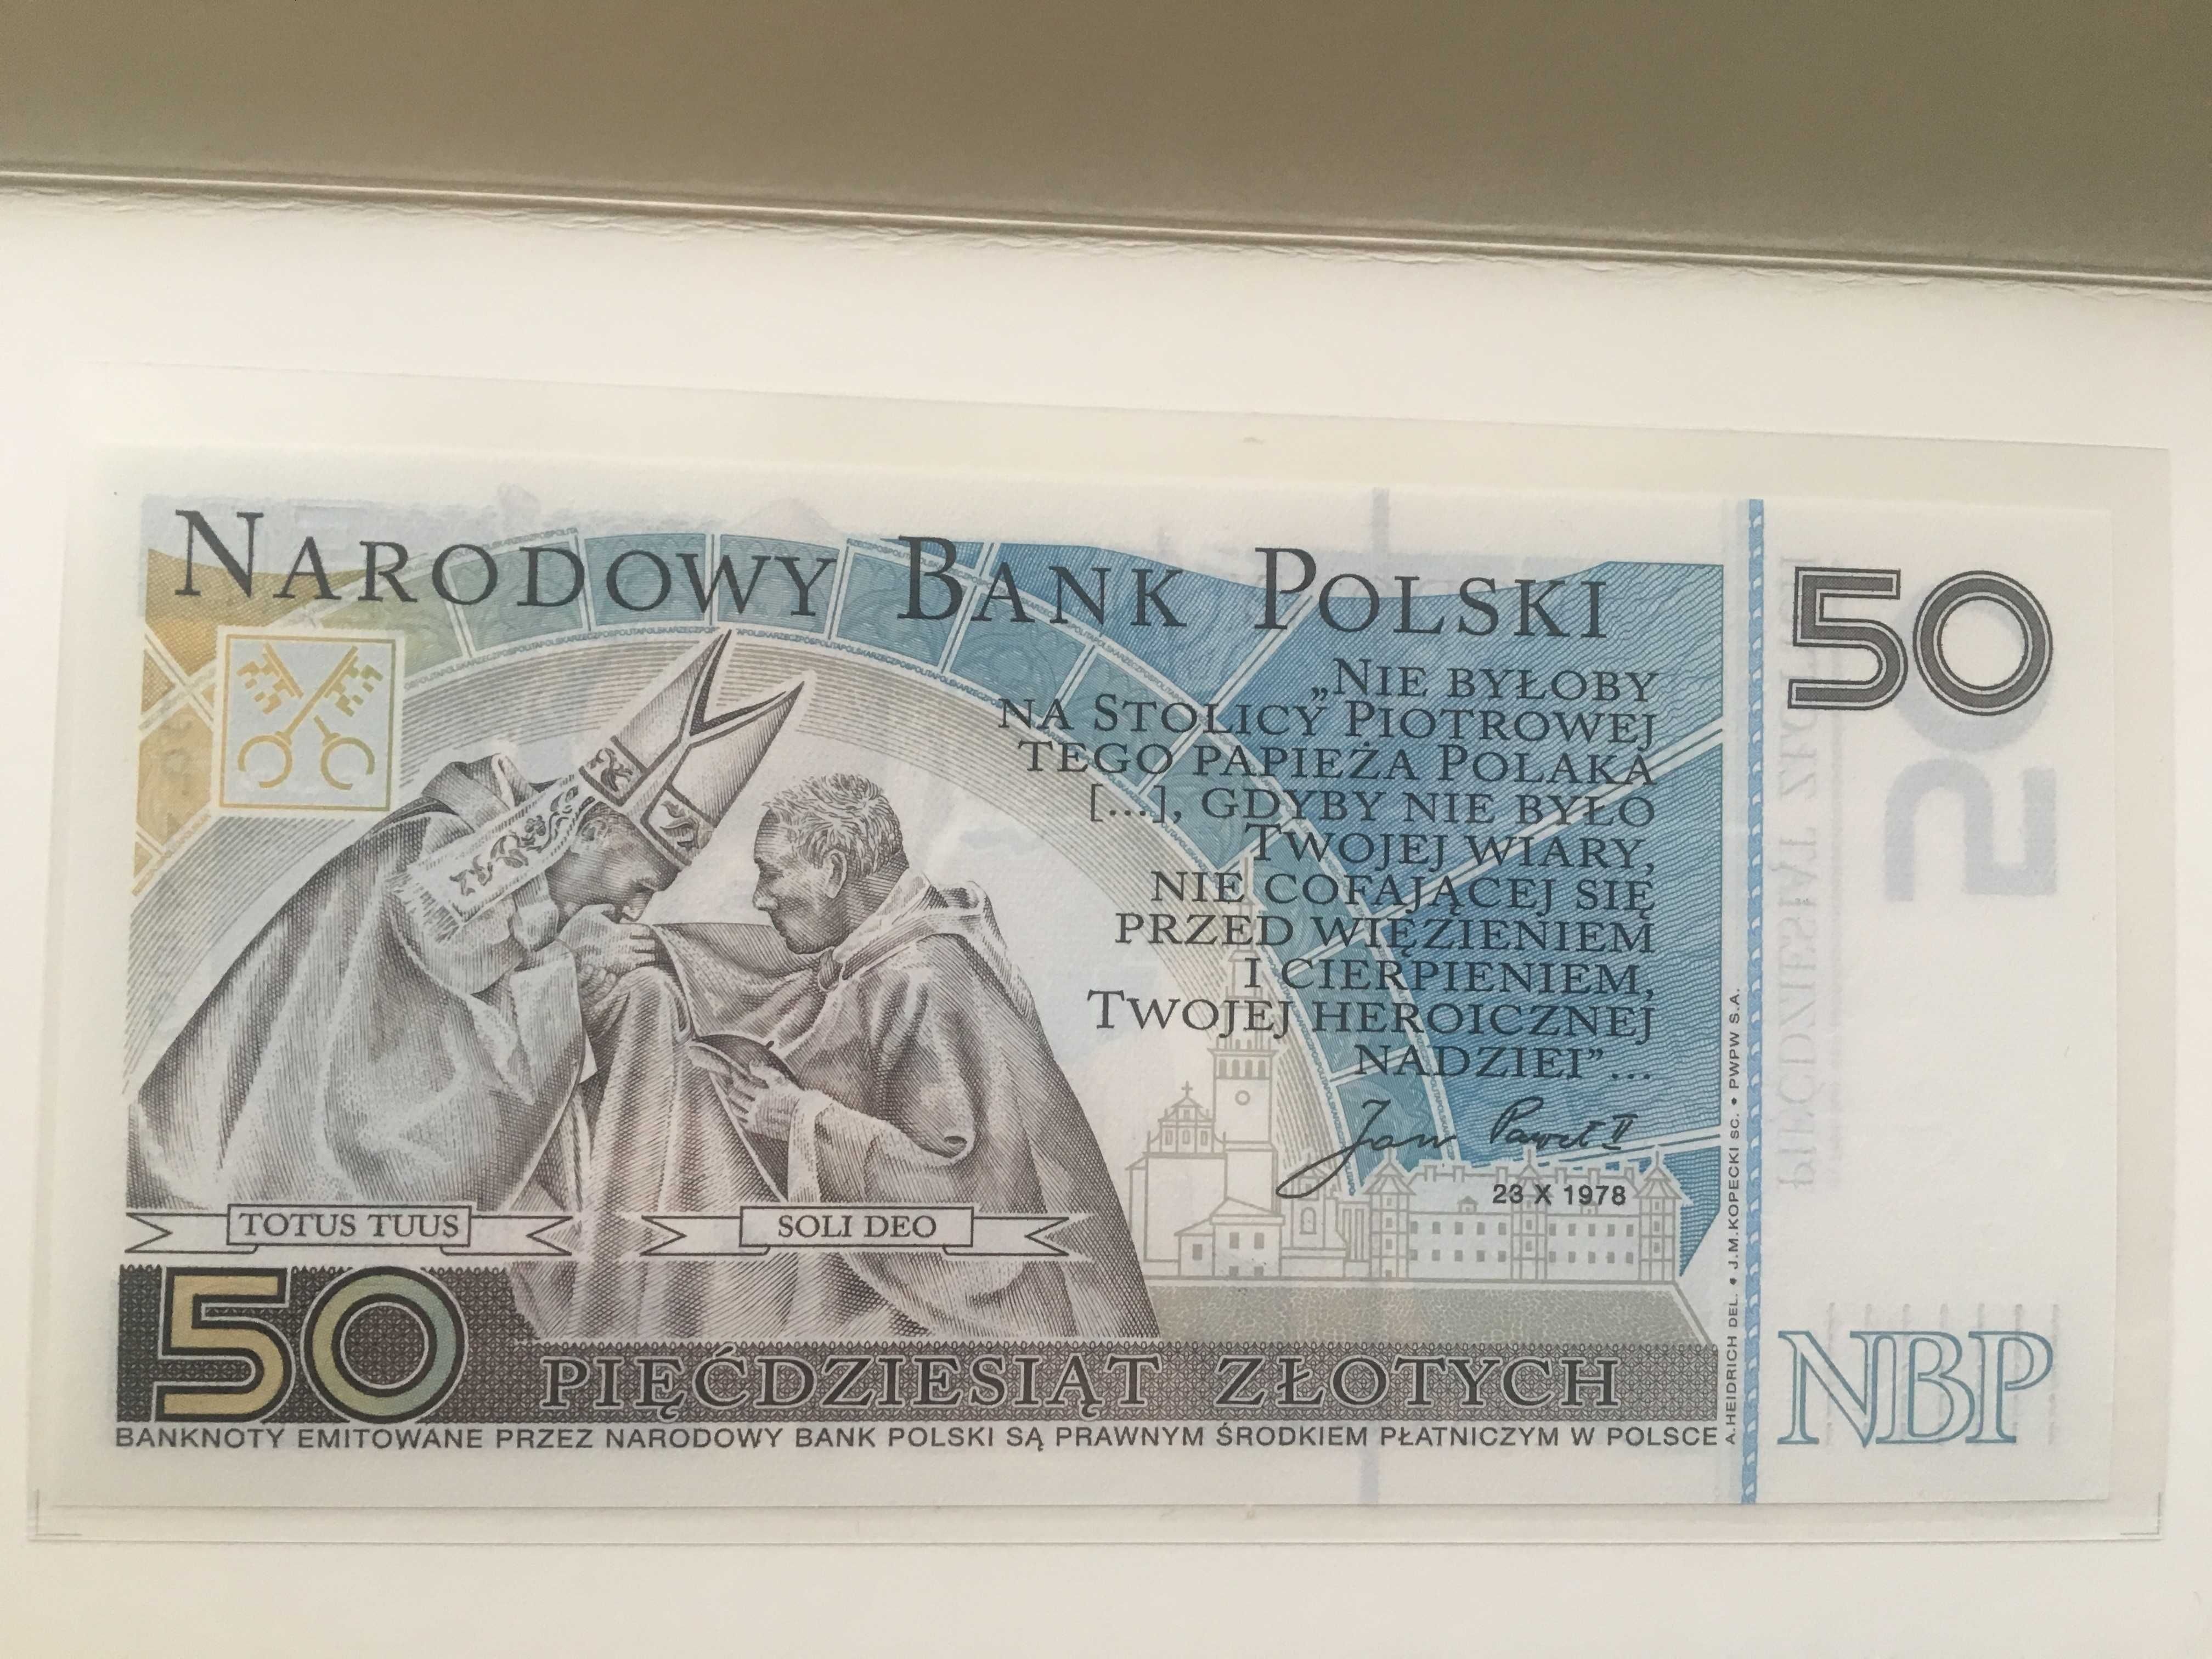 7 szt banknotów 20 i 50 zł w folii bankowej.